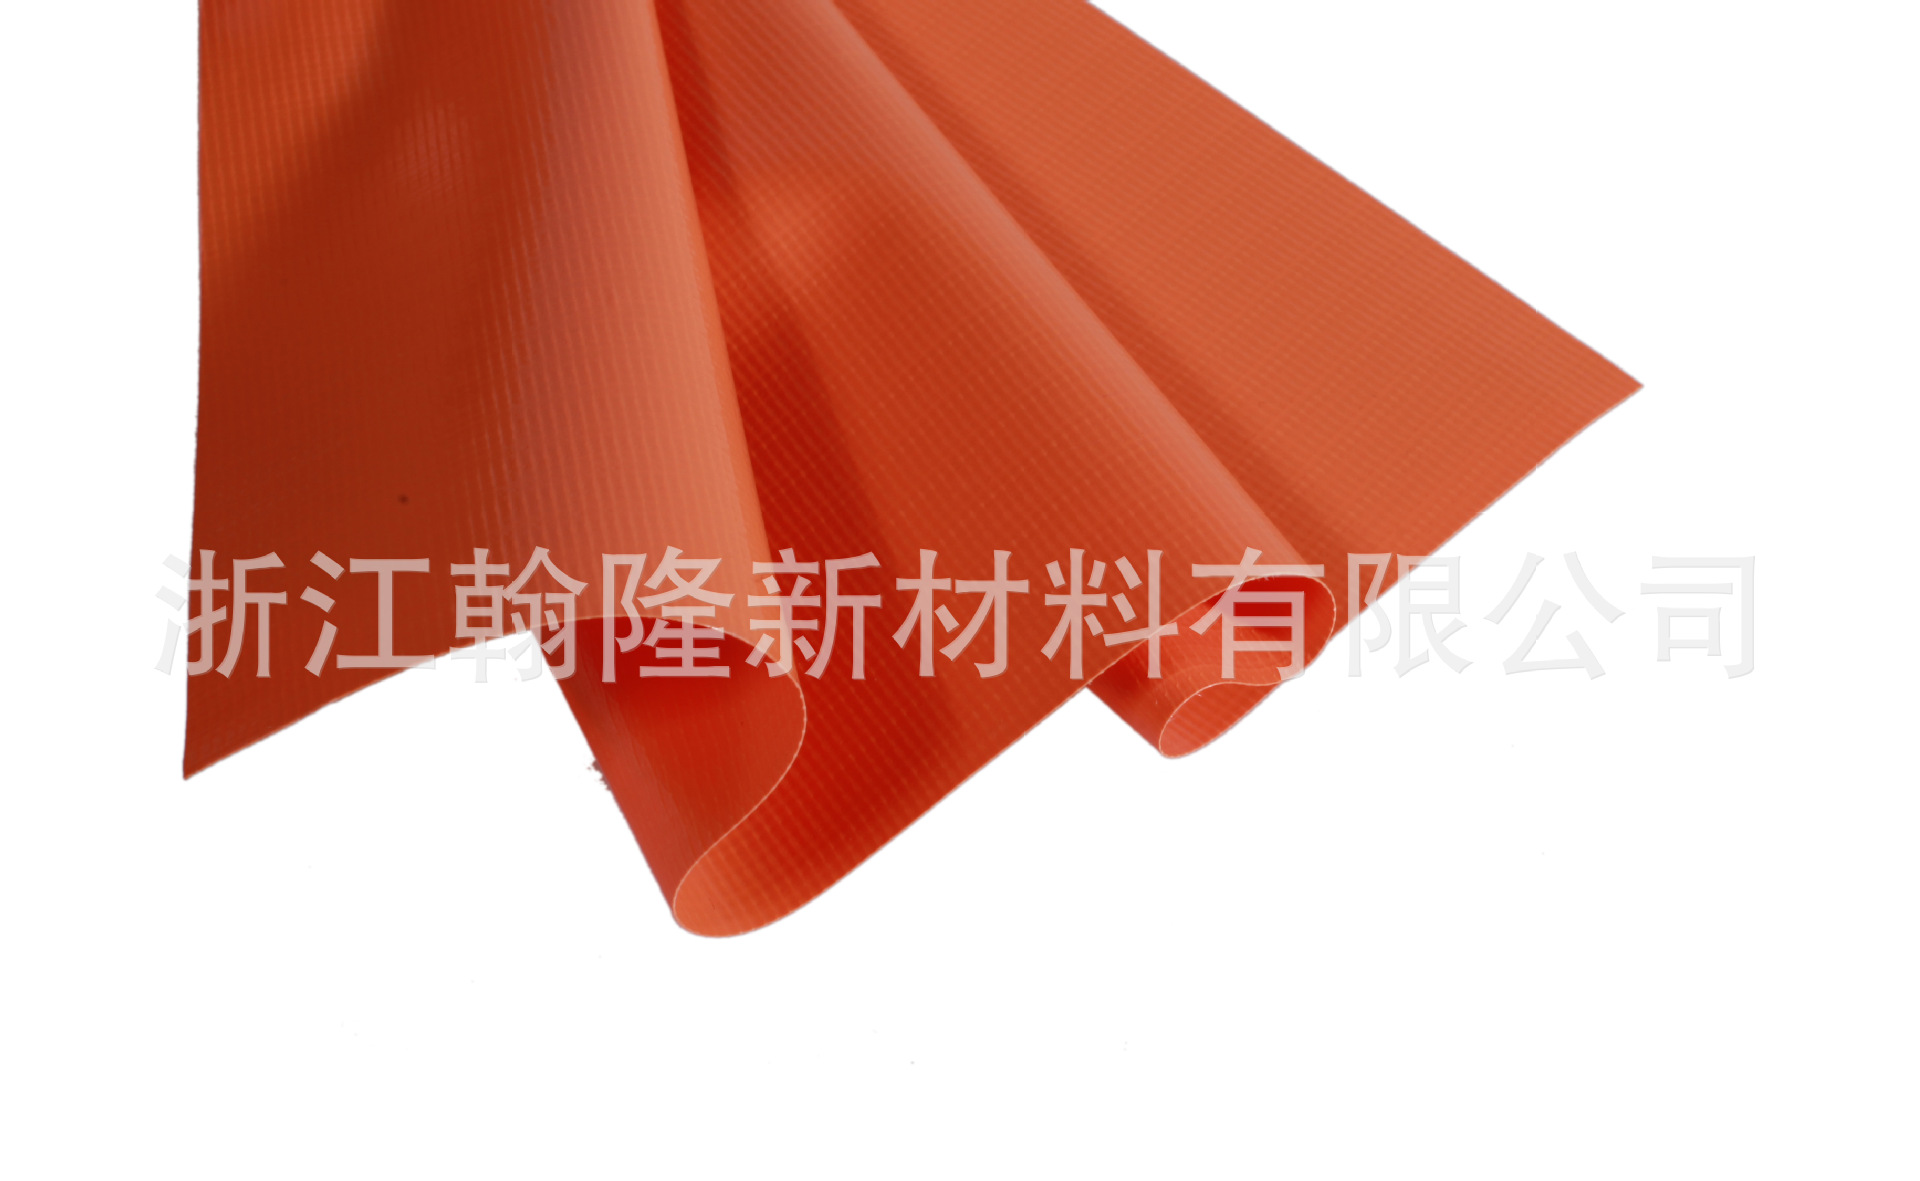 帐篷防潮垫PVC夹网布上海黄浦区帐篷防潮垫PVC夹网布厂家定制直销价格 翰隆新材料